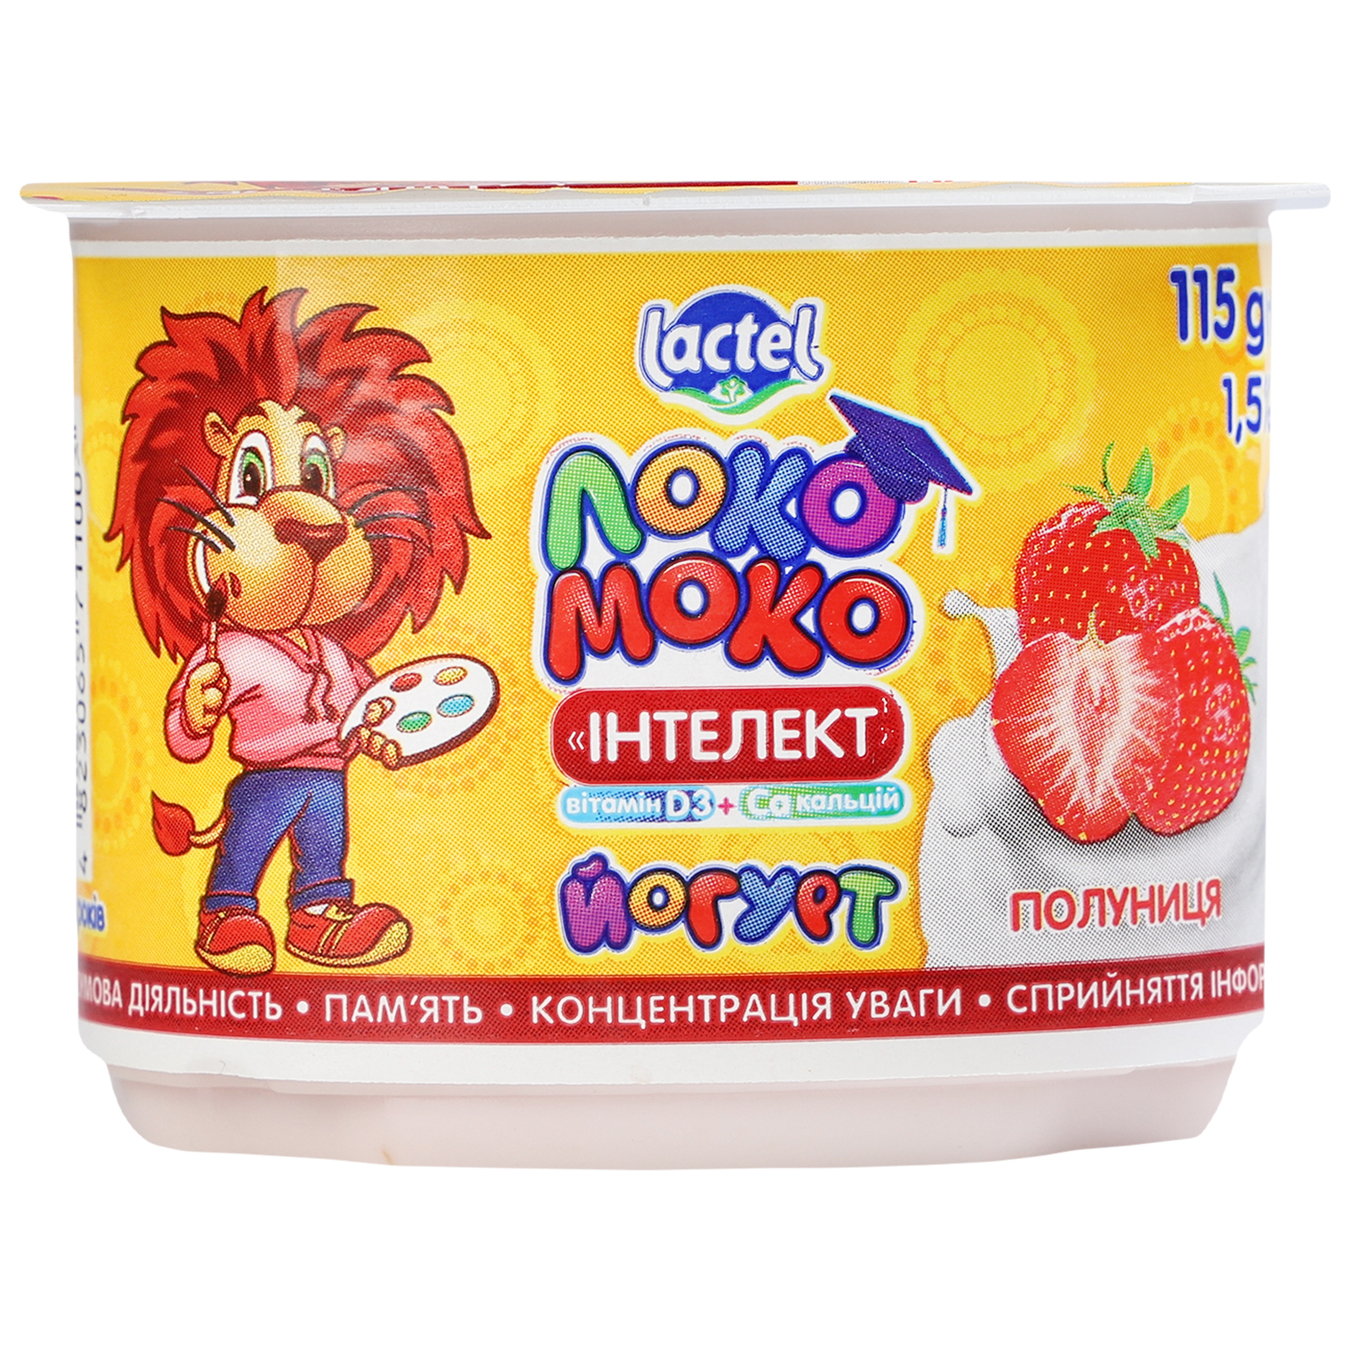 Yogurt Loko Moko with strawberries 1.5% 115g